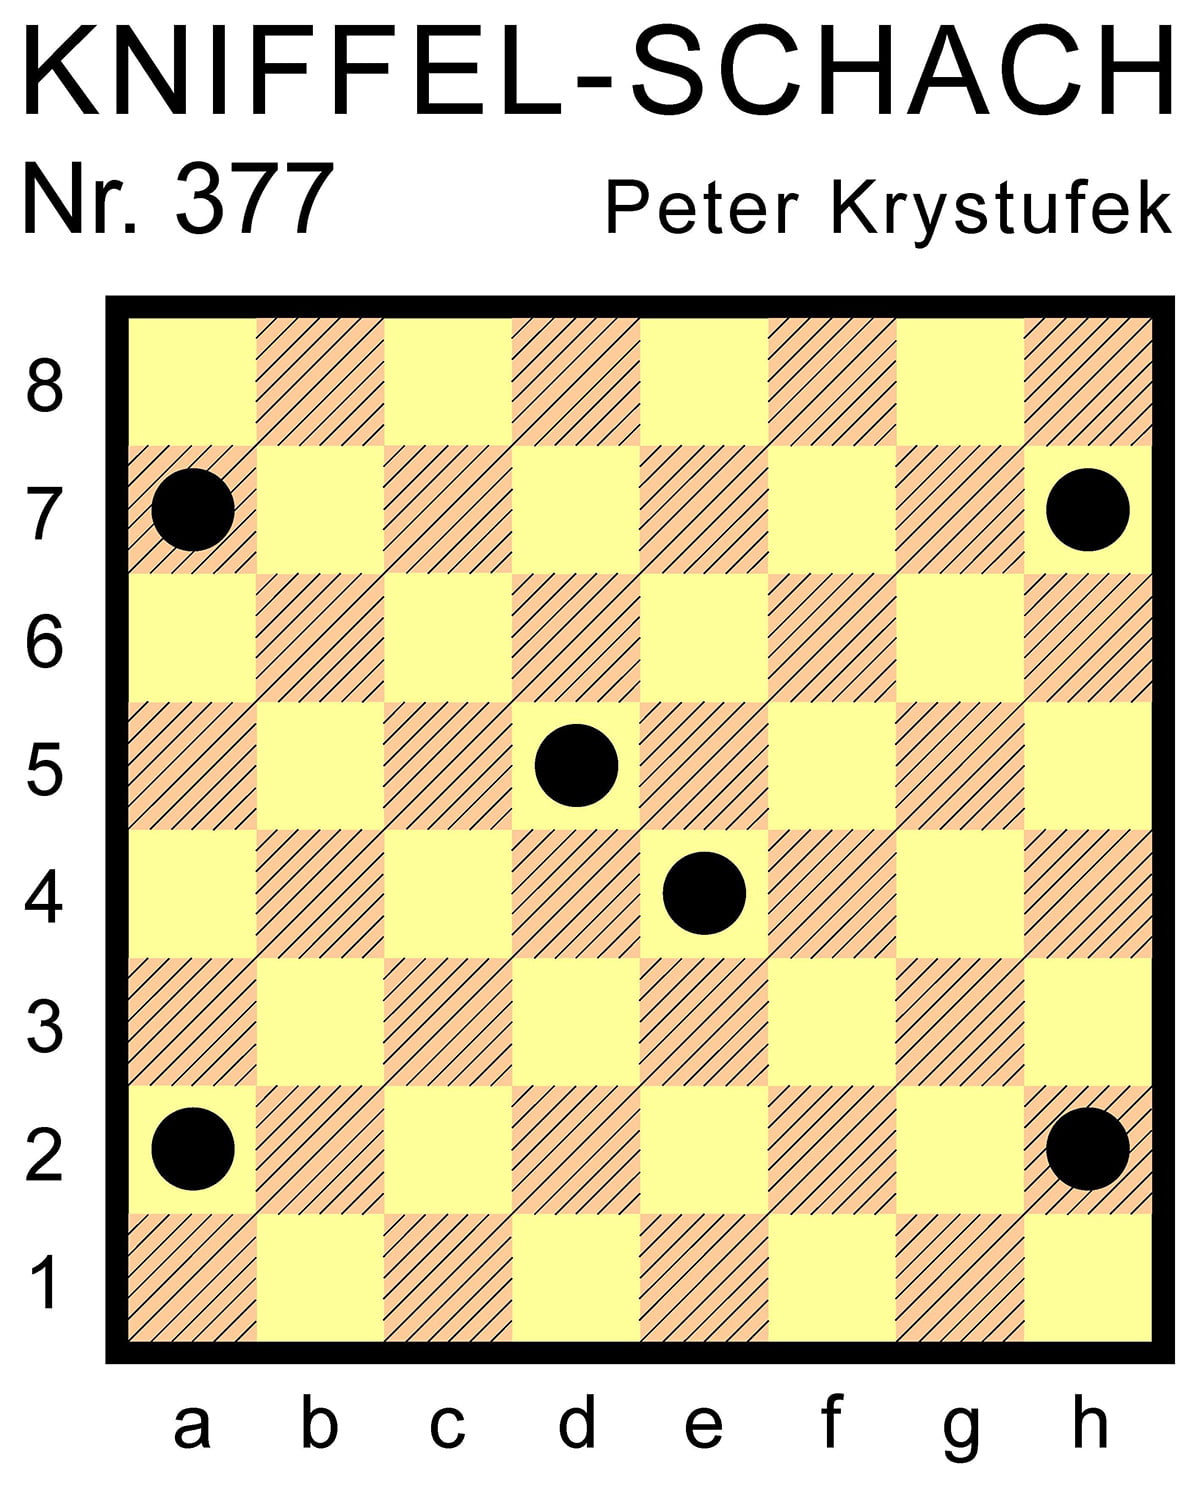 Kniffel-Schach Nr. 377